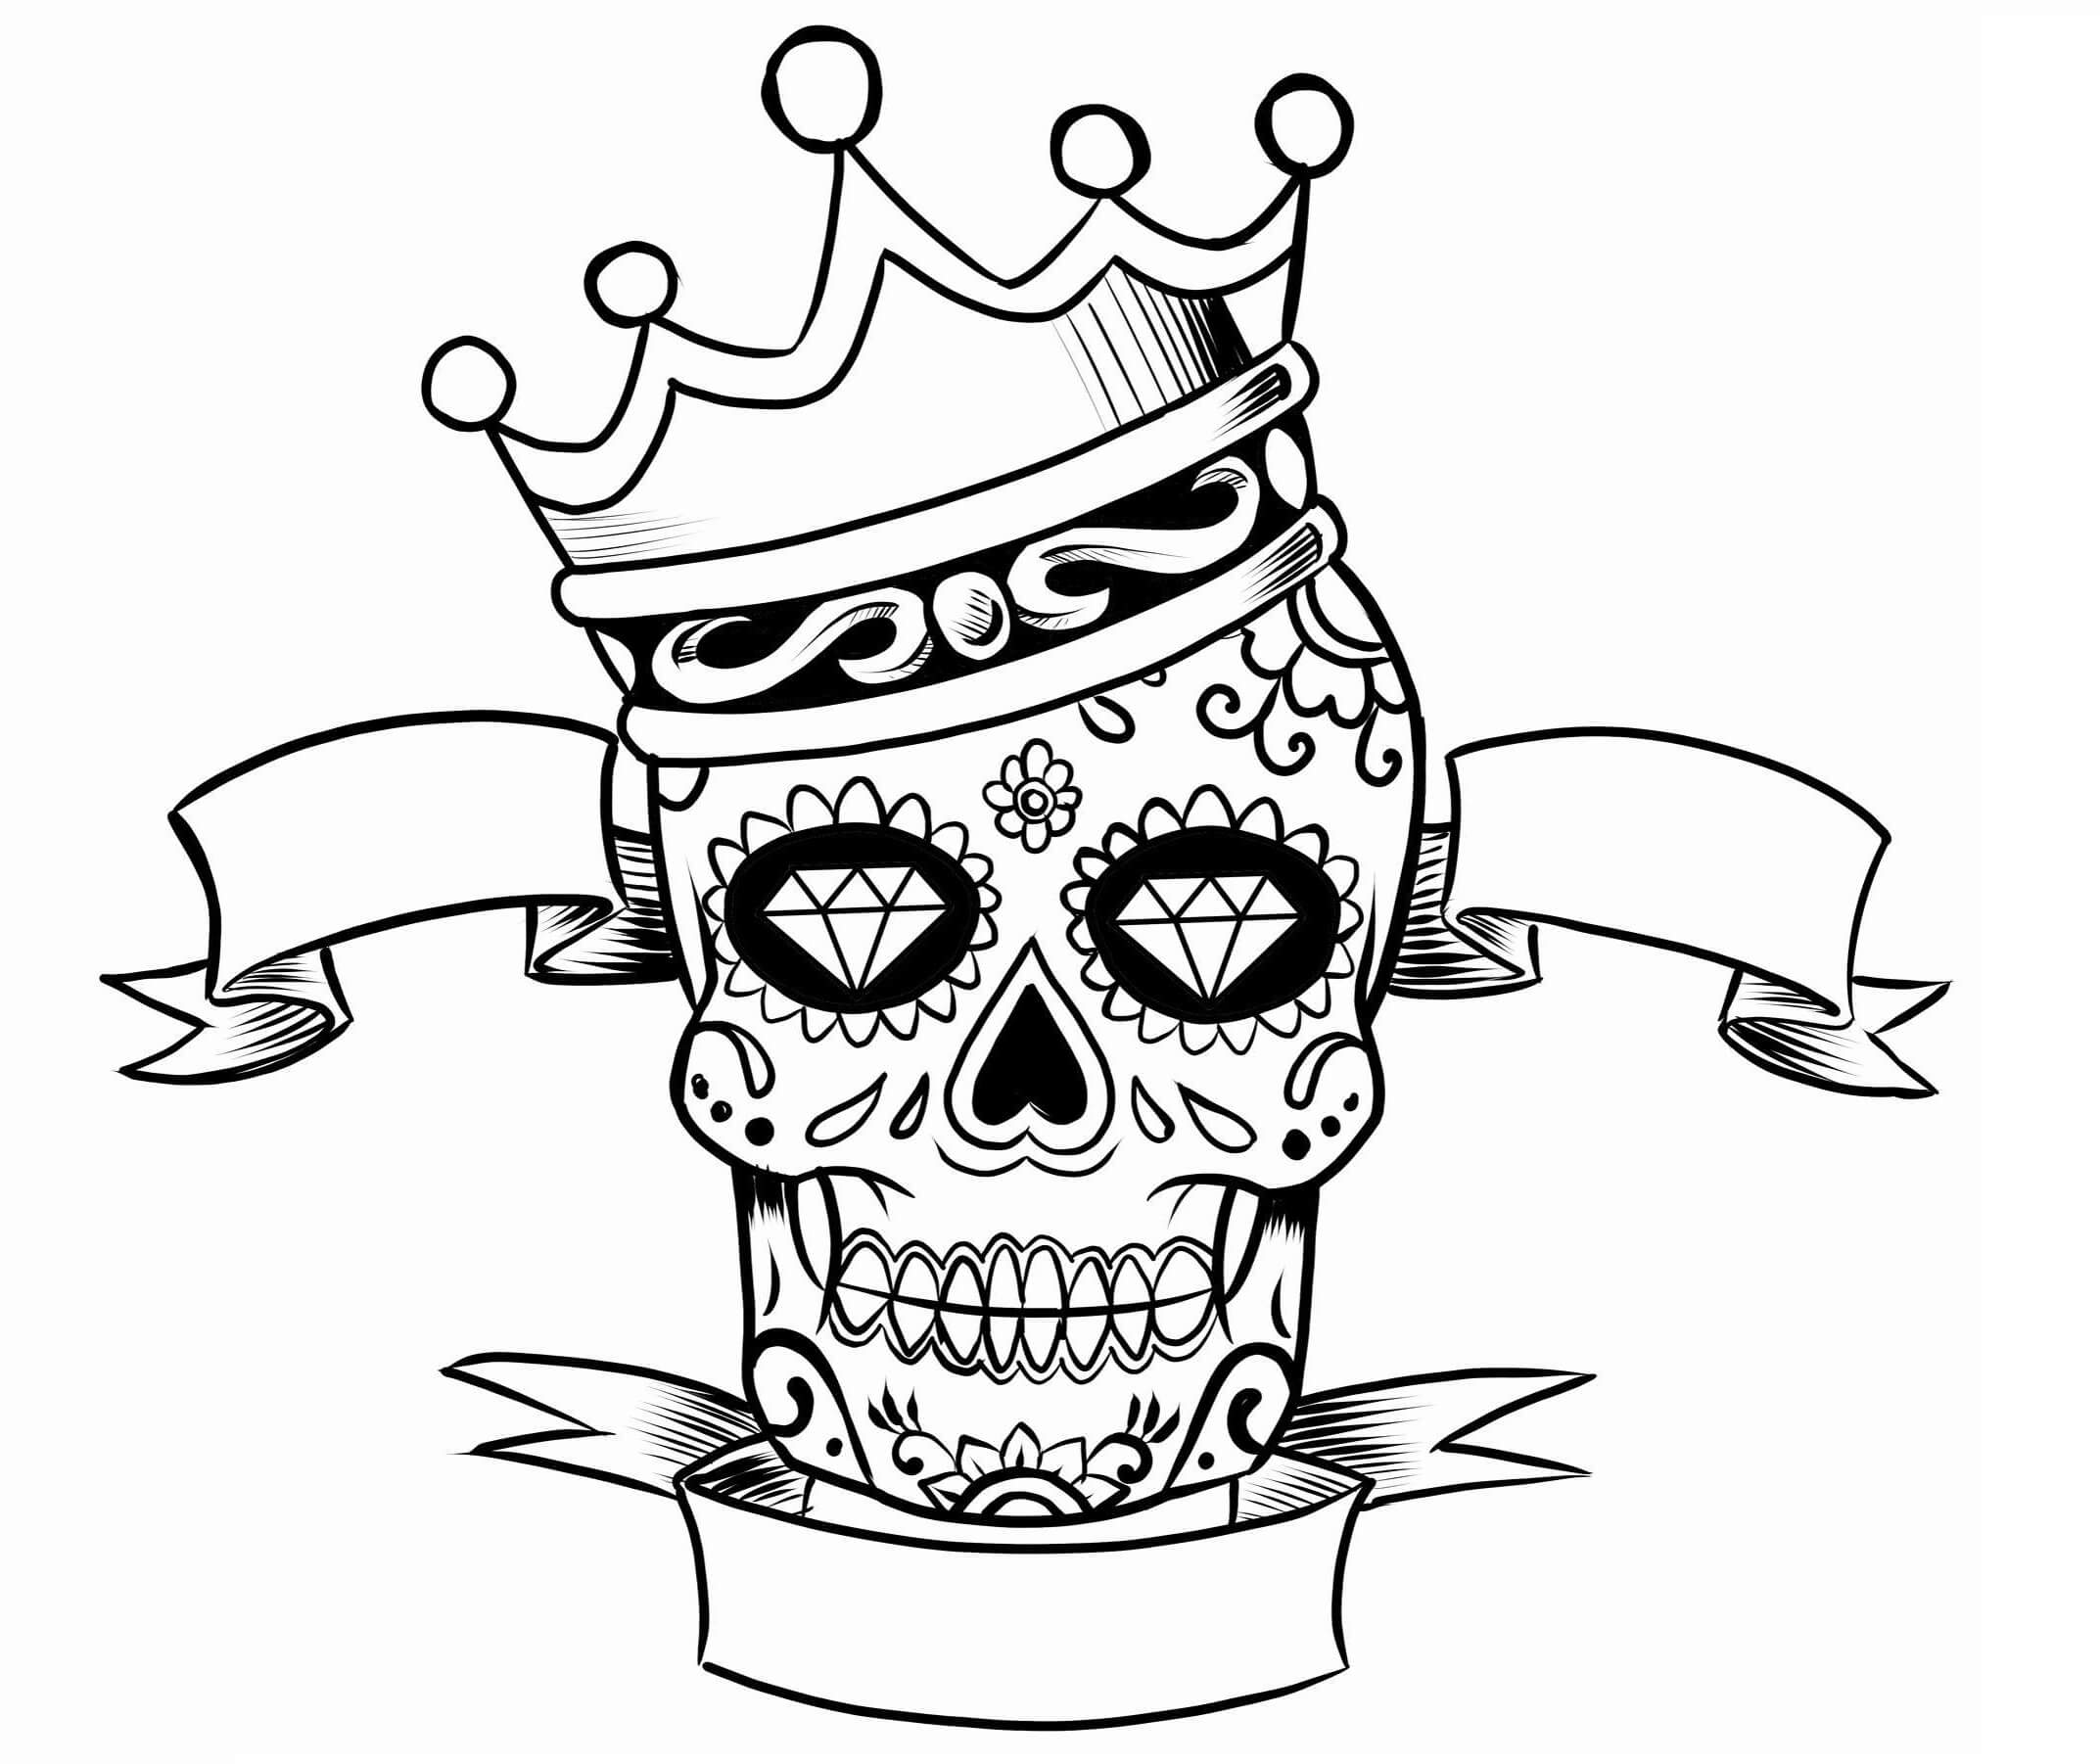 Mandala Skull With Crown Coloring Page Mandalas